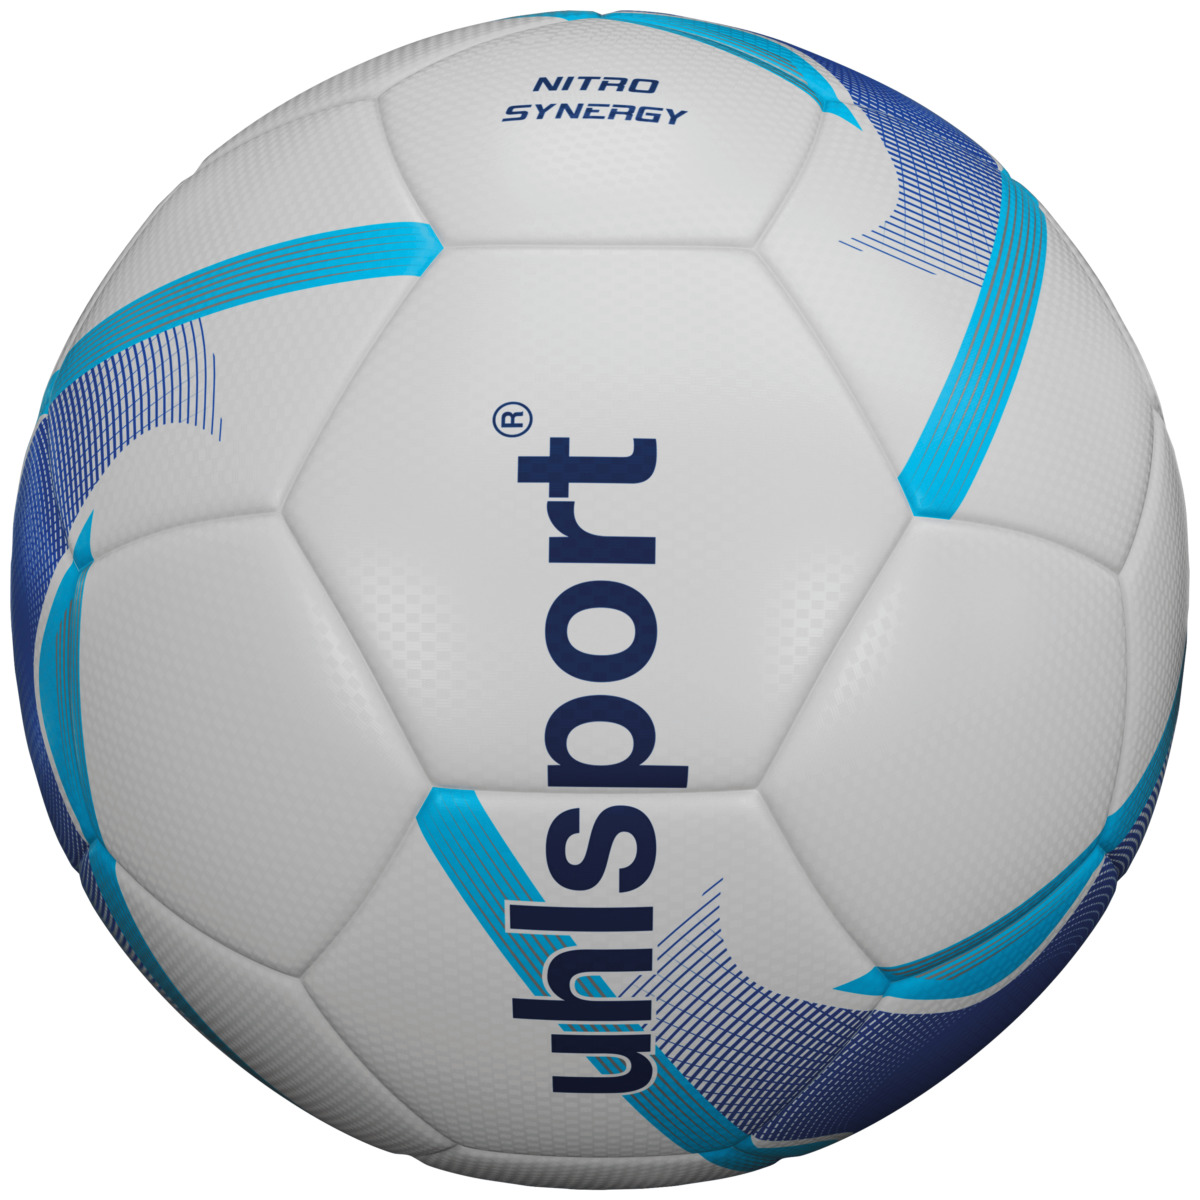 Uhlsport NITRO SYNERGY Fussball für Kunstrasen und Naturrasen 100166701 von uhlsport